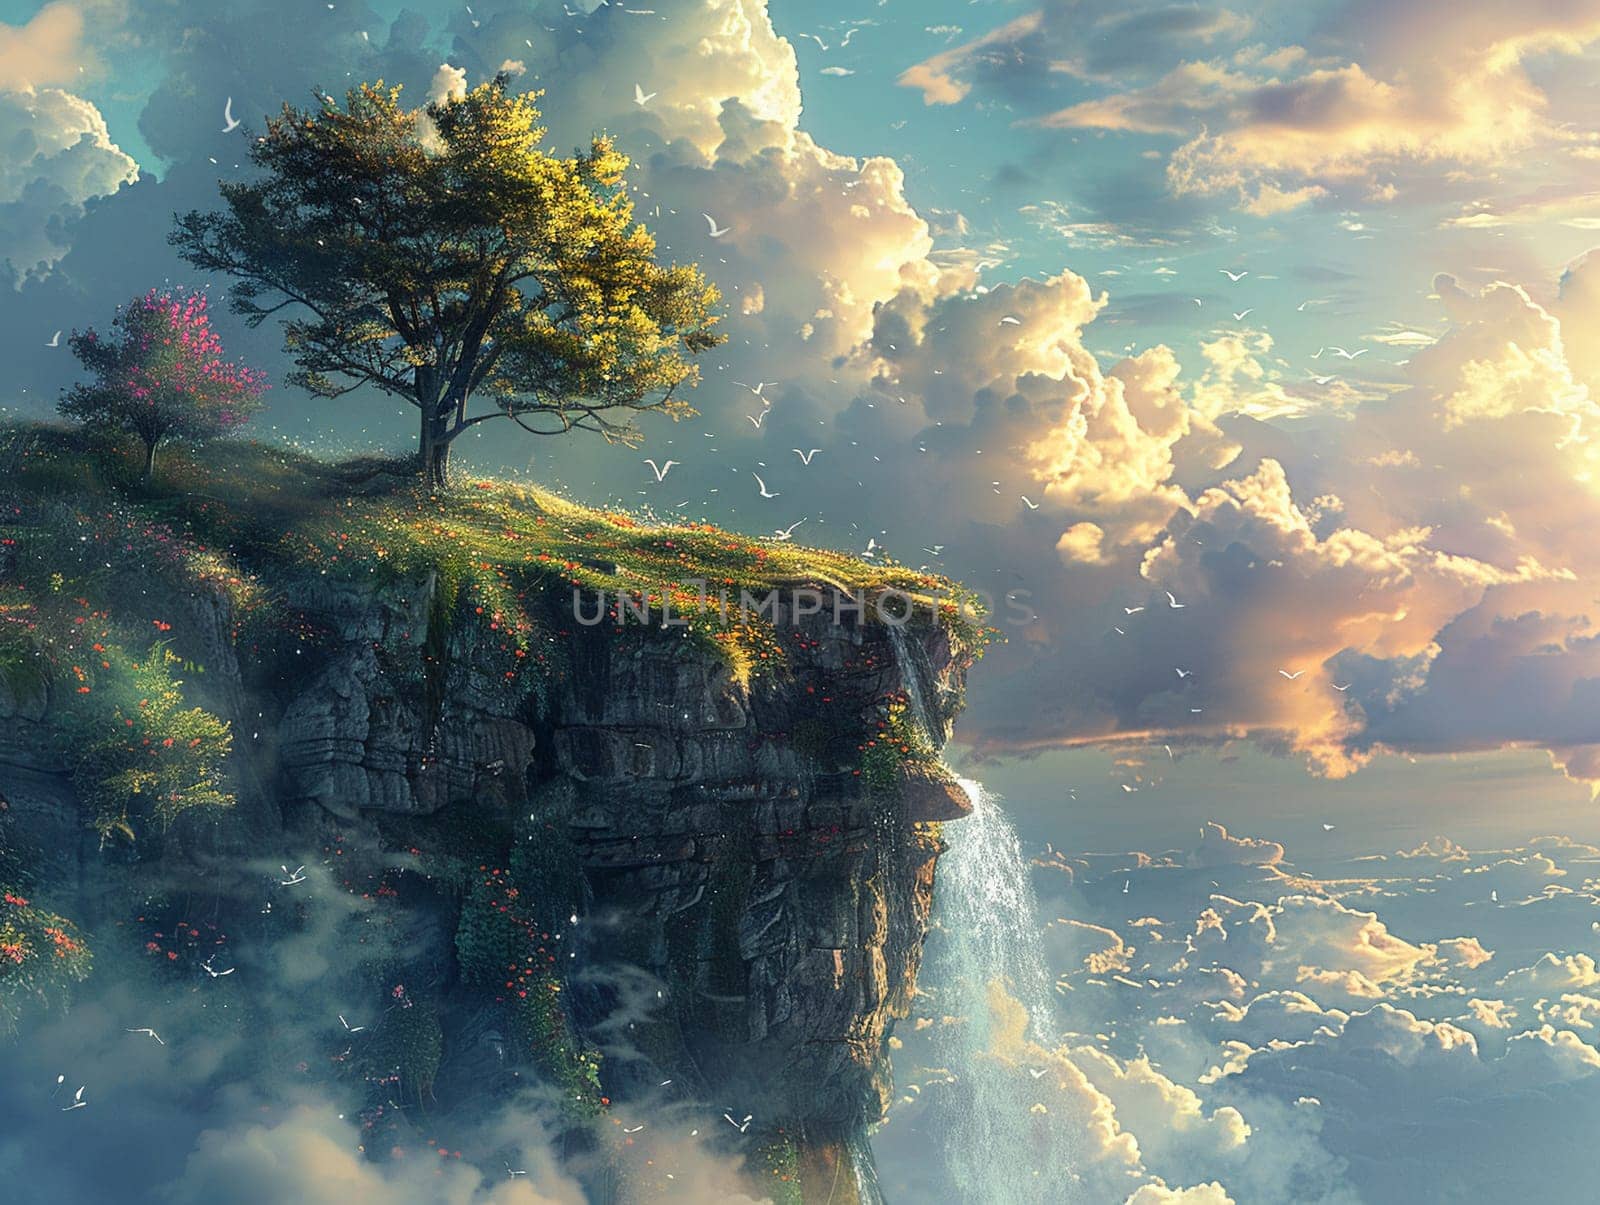 Photoshop montage of a fantasy landscape, blending natural and digital elements.